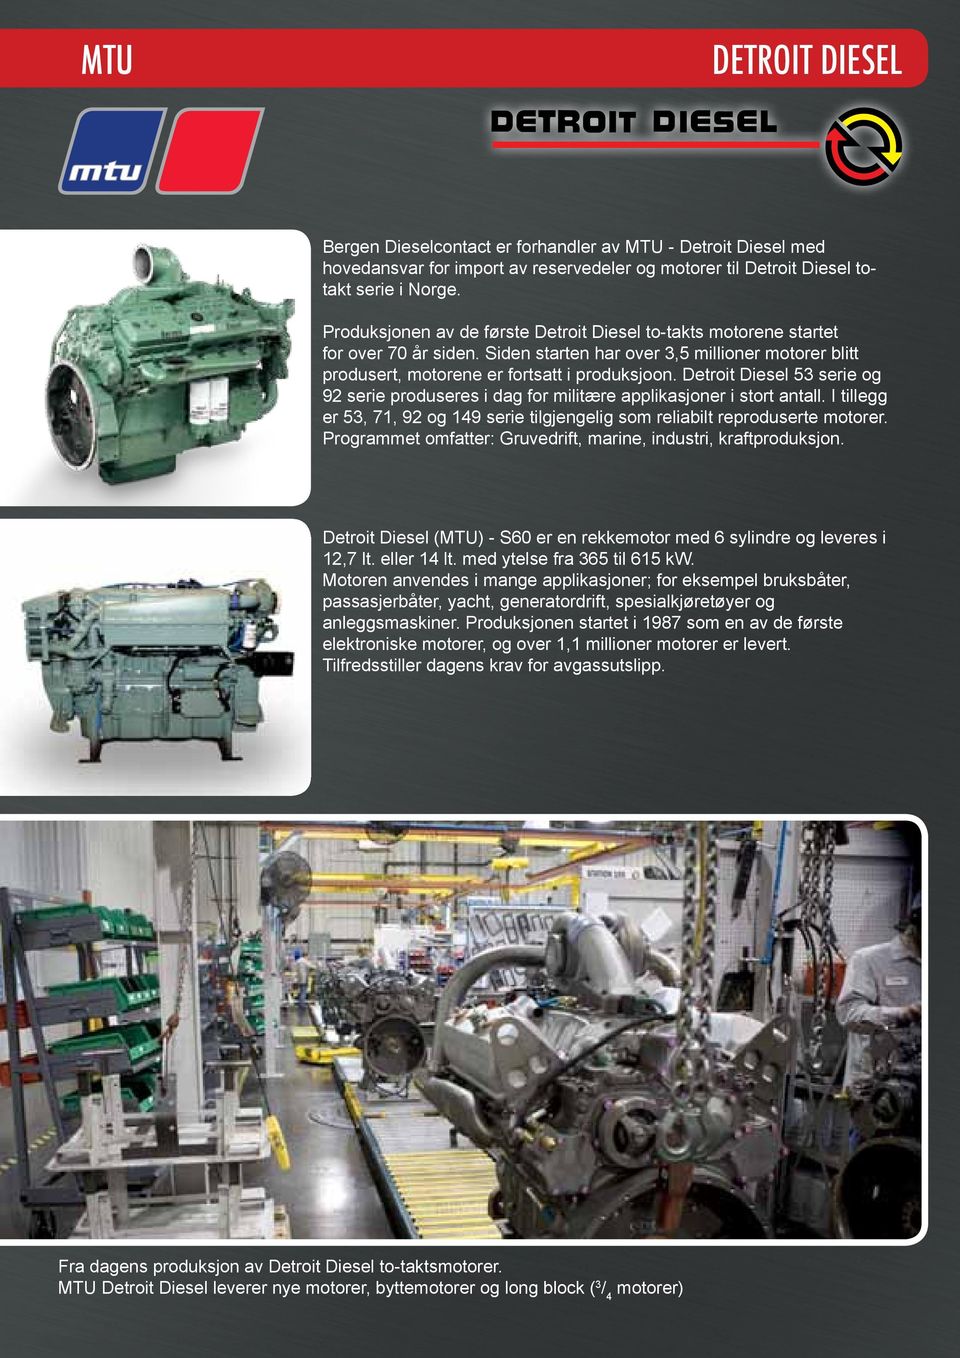 Detroit Diesel 53 serie og 92 serie produseres i dag for militære applikasjoner i stort antall. I tillegg er 53, 71, 92 og 149 serie tilgjengelig som reliabilt reproduserte motorer.